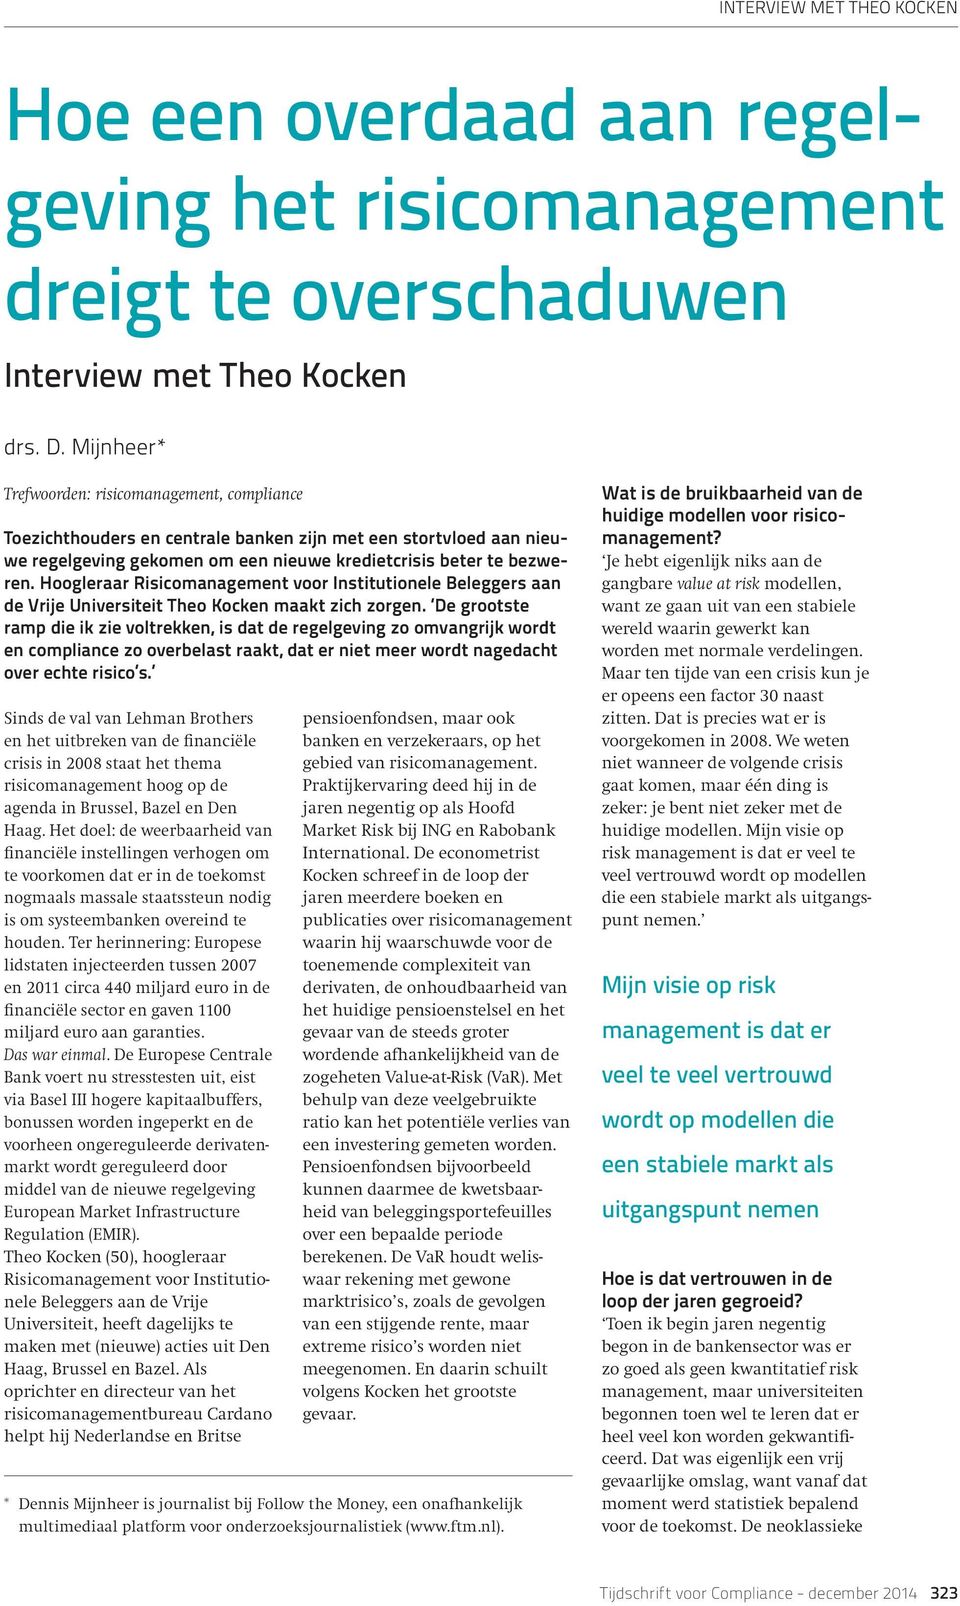 Hoogleraar Risicomanagement voor Institutionele Beleggers aan de Vrije Universiteit Theo Kocken maakt zich zorgen.